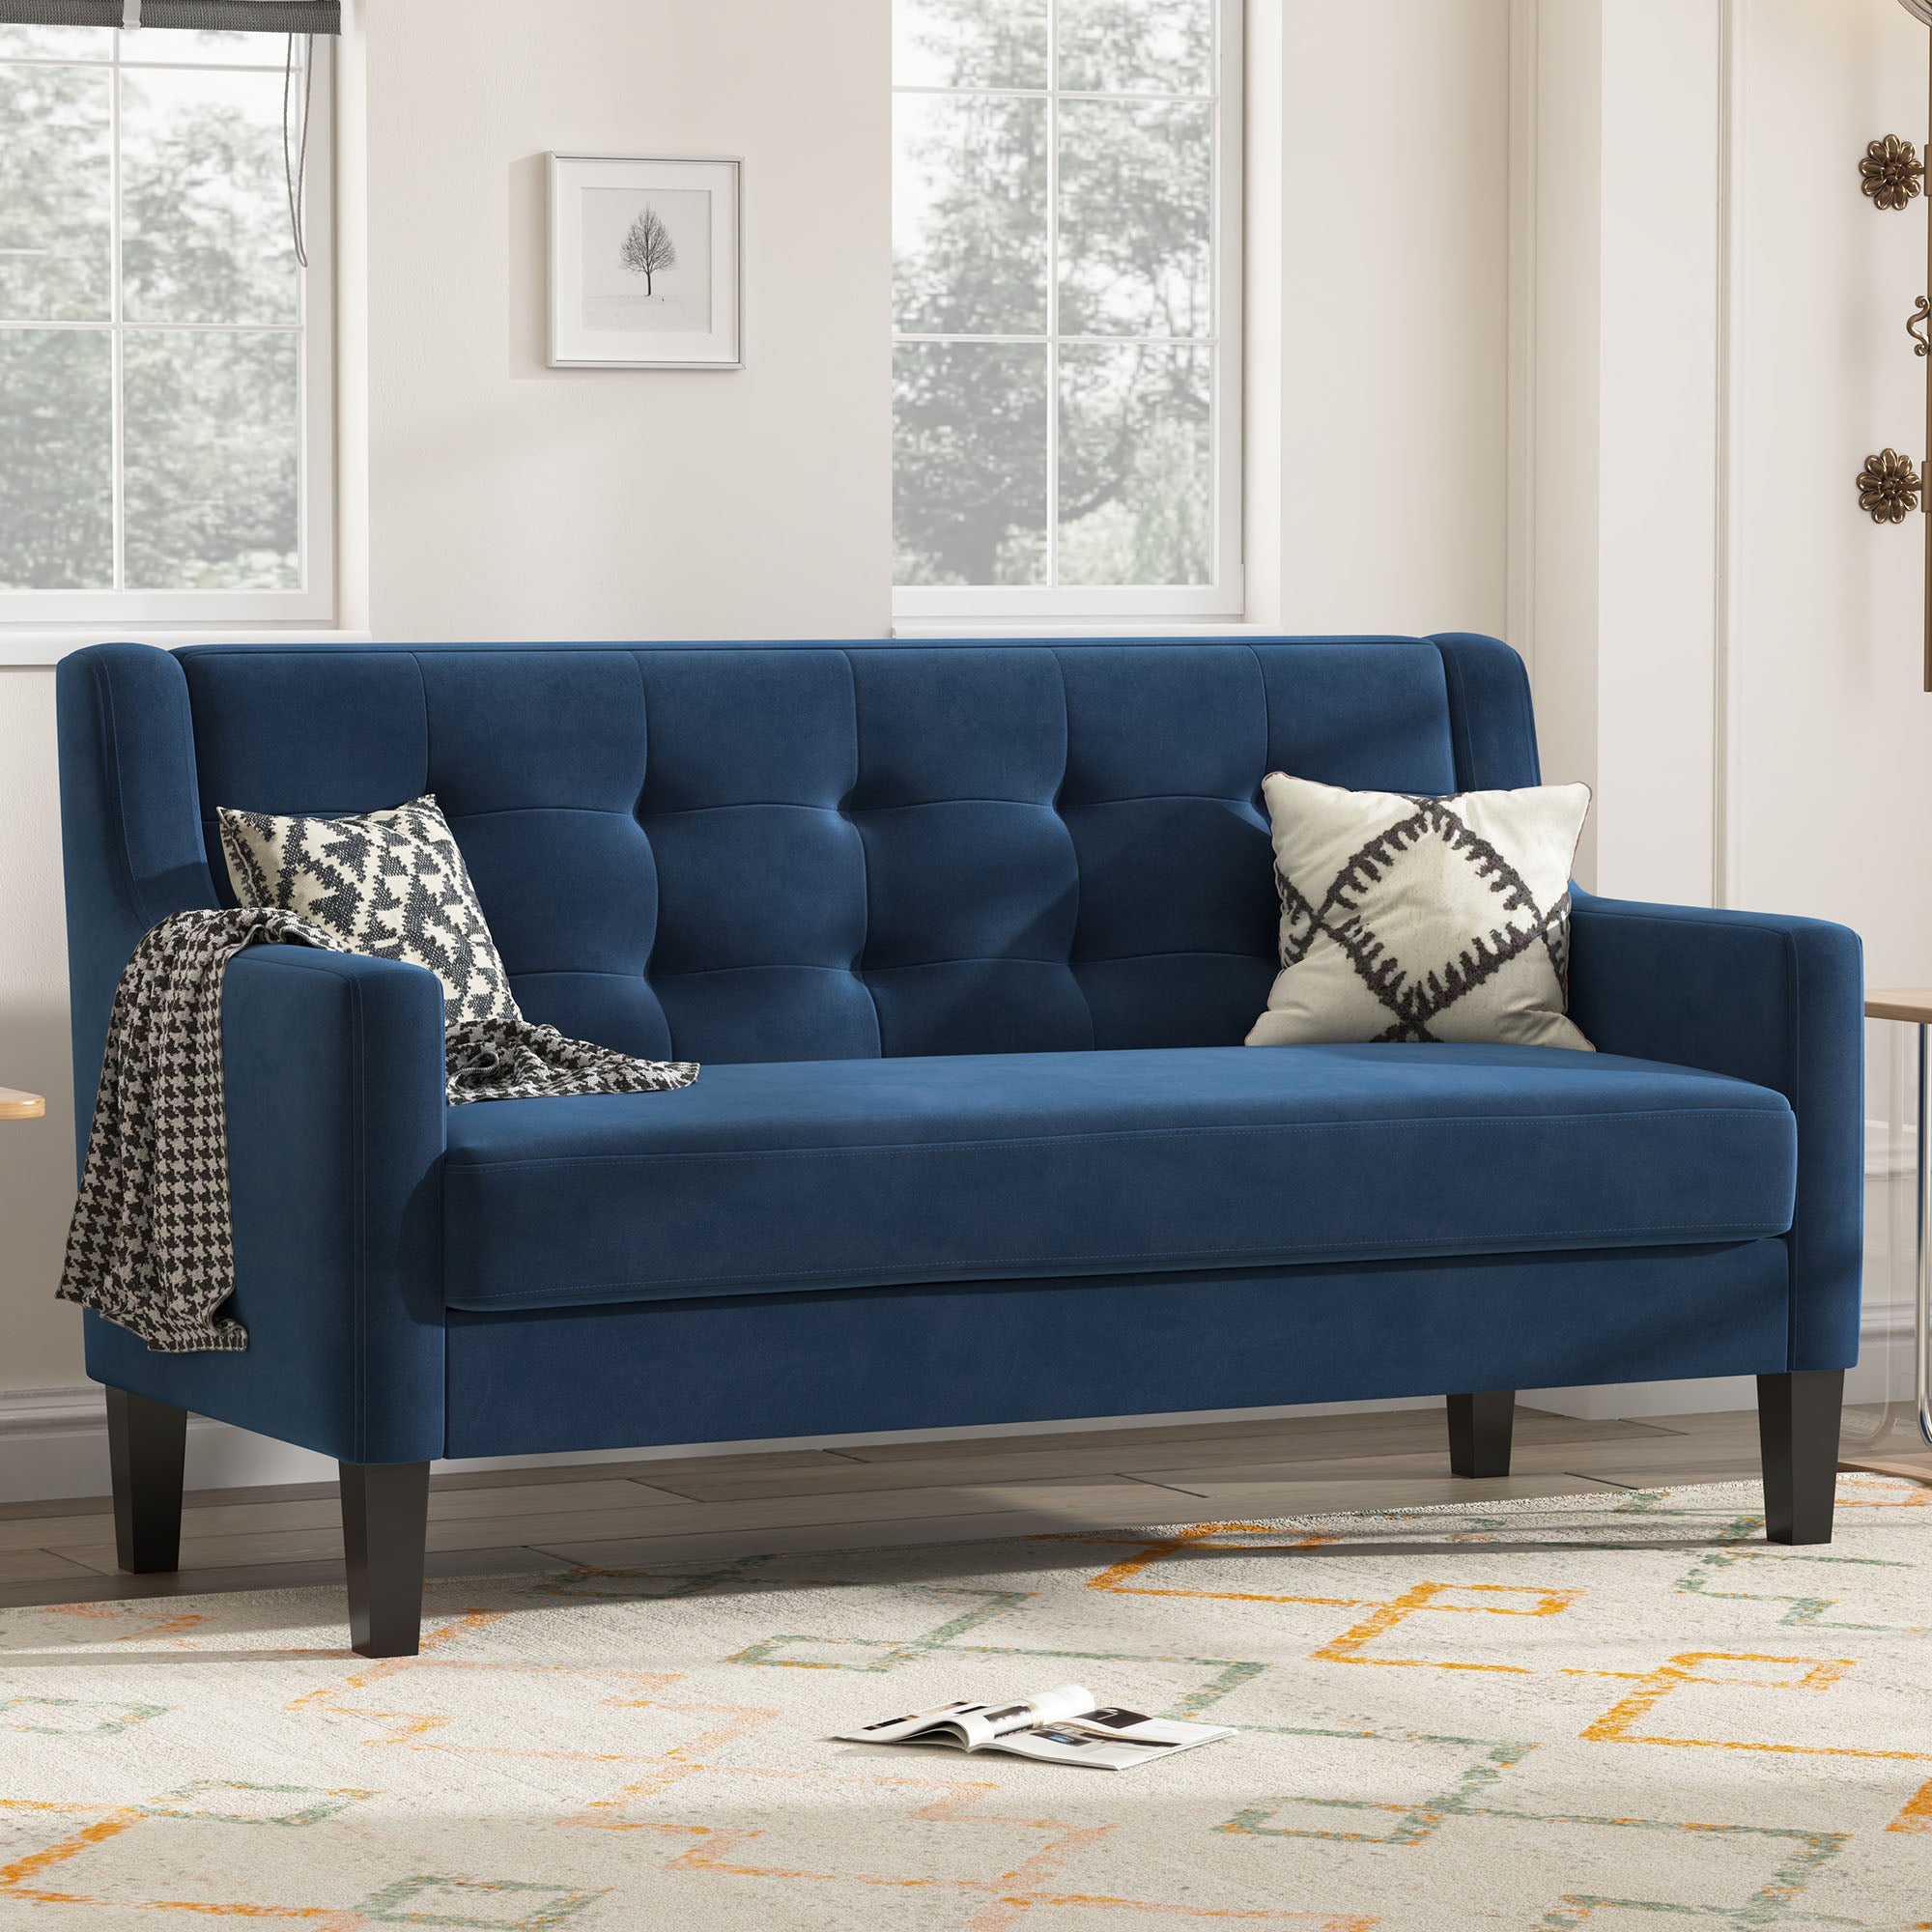 HONBAY Dark Blue Velvet Small Size Loveseat Sofa Couch for Living Room